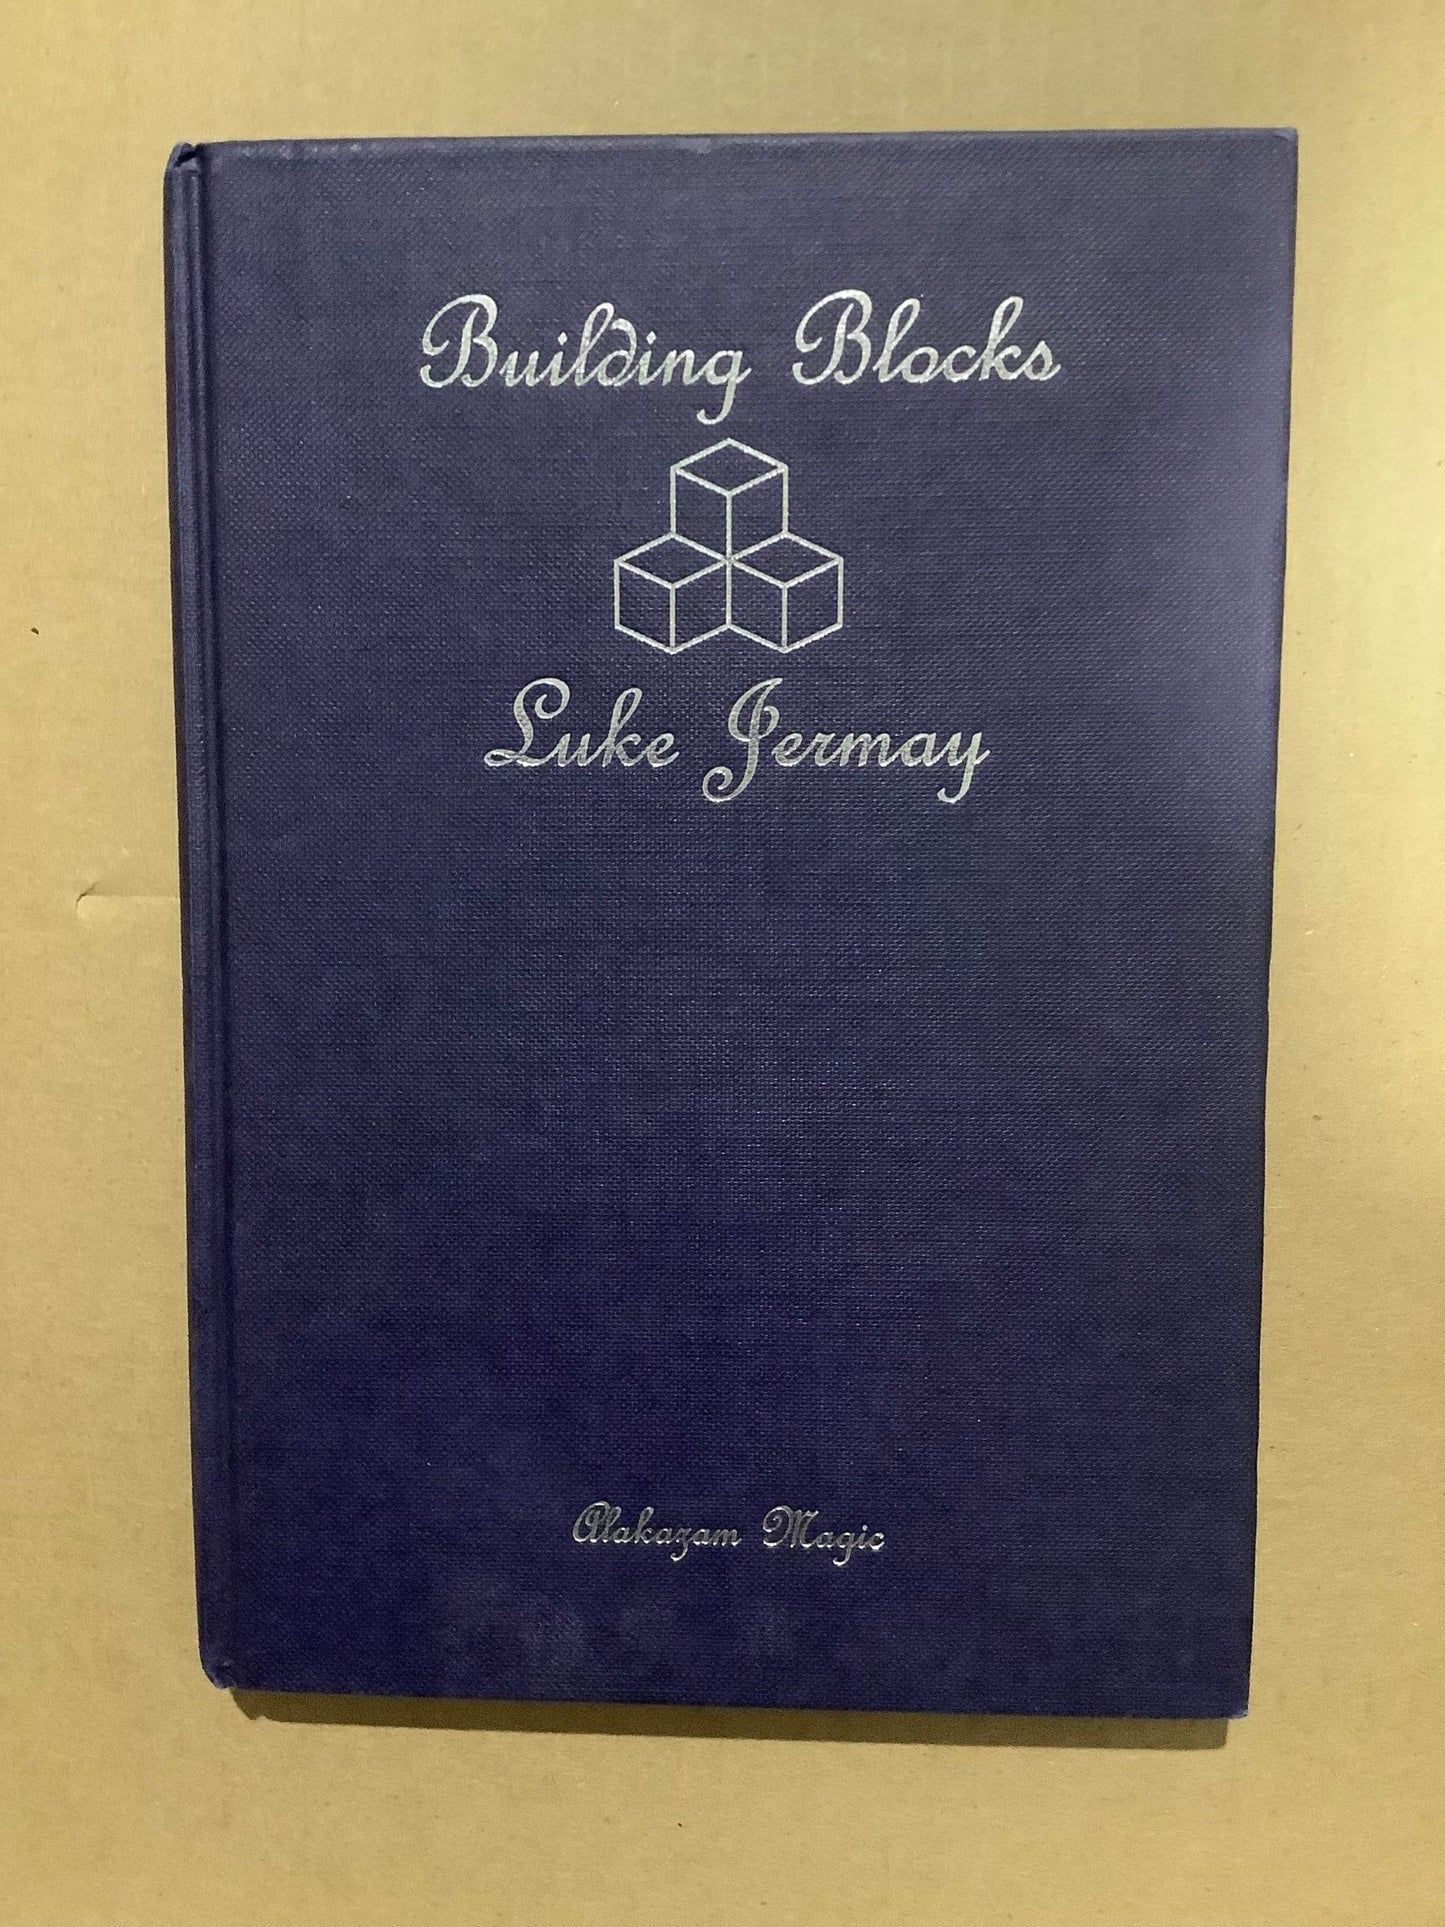 Building Blocks by Luke Jermay, used